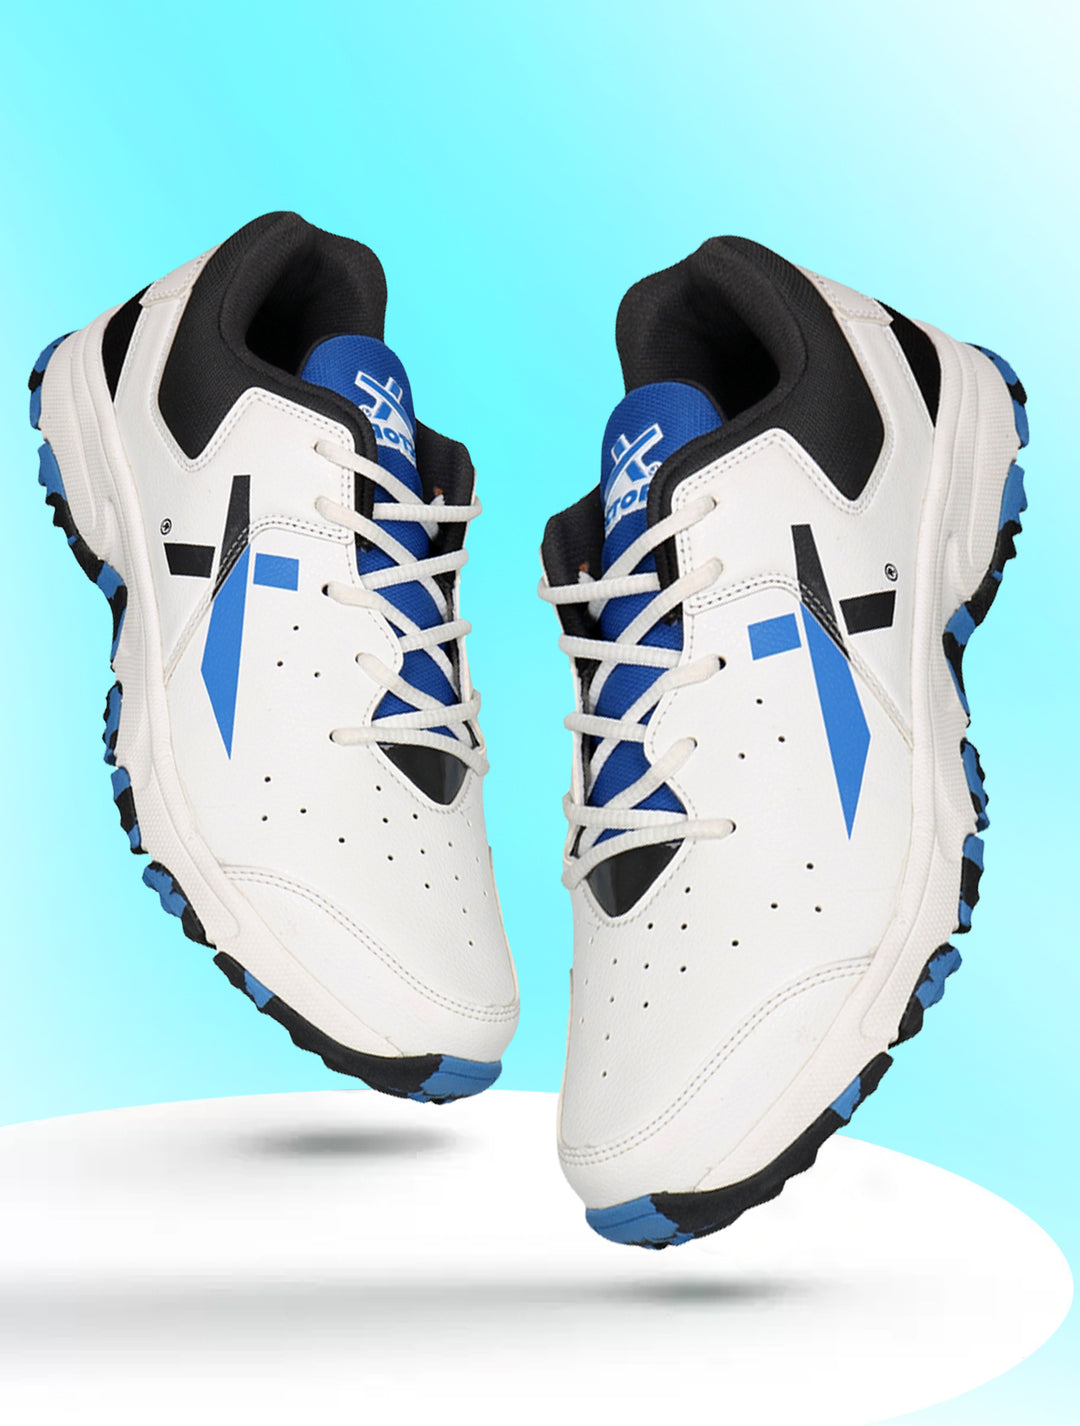 Ckt-500 Cricket Shoes For Men (White | Black | Blue)